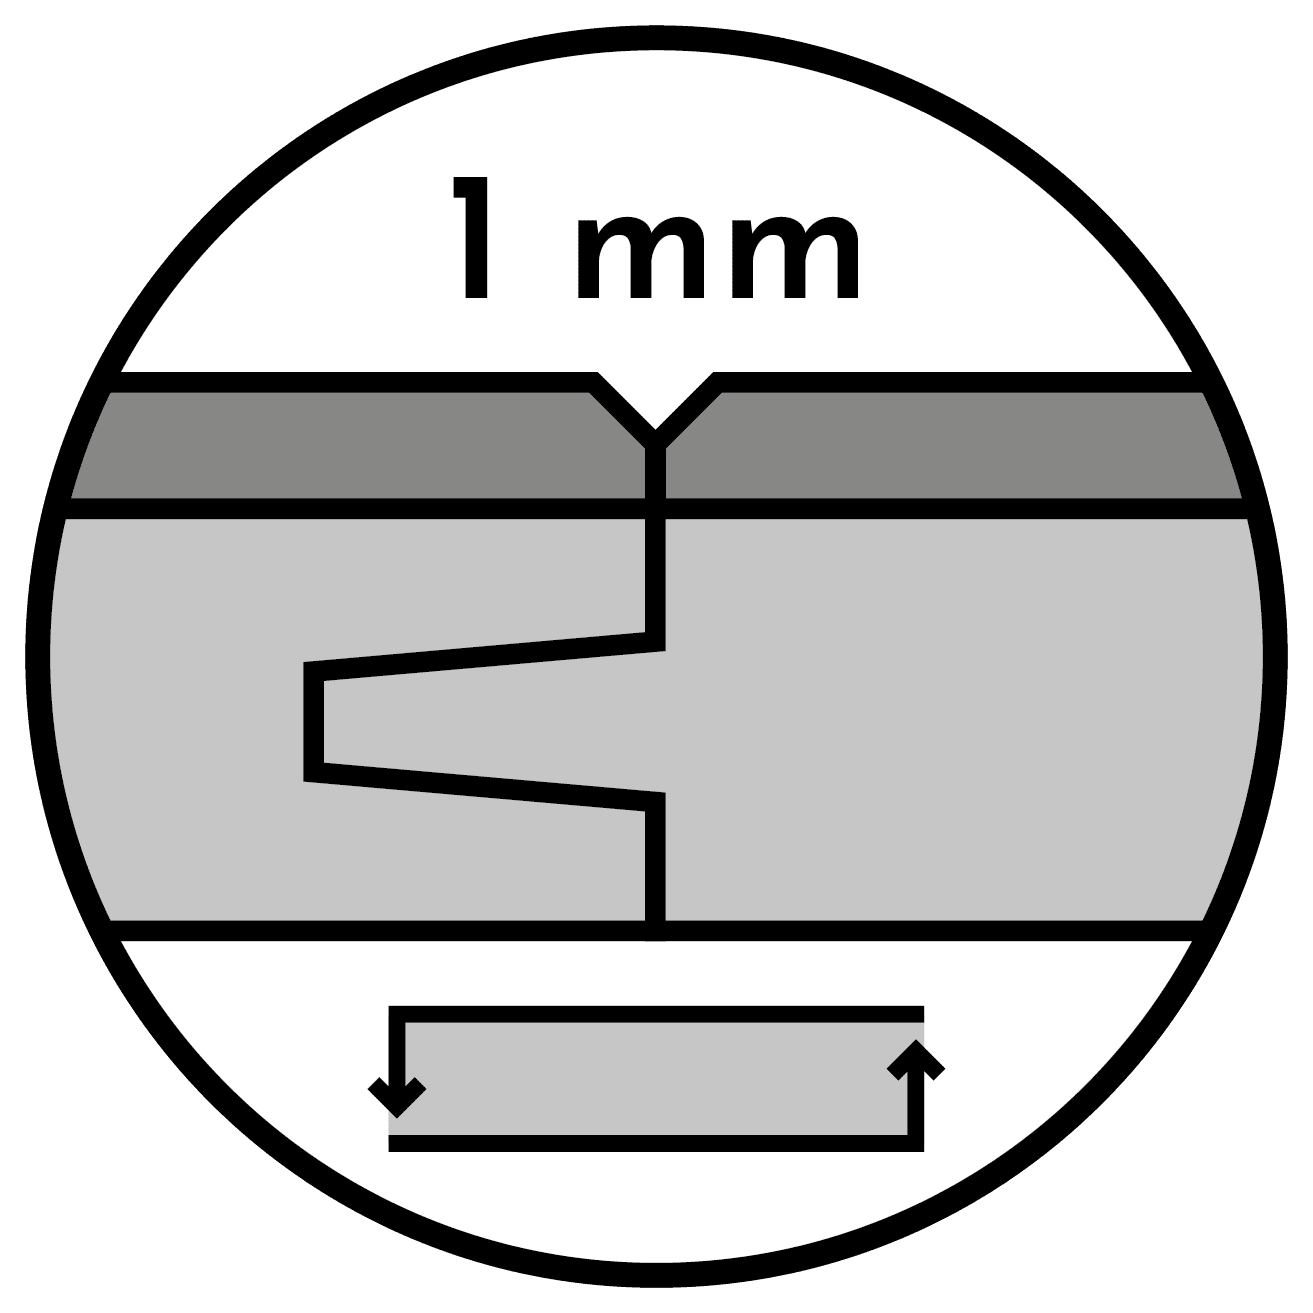 1mm-Vdrazka-ParkettWorld